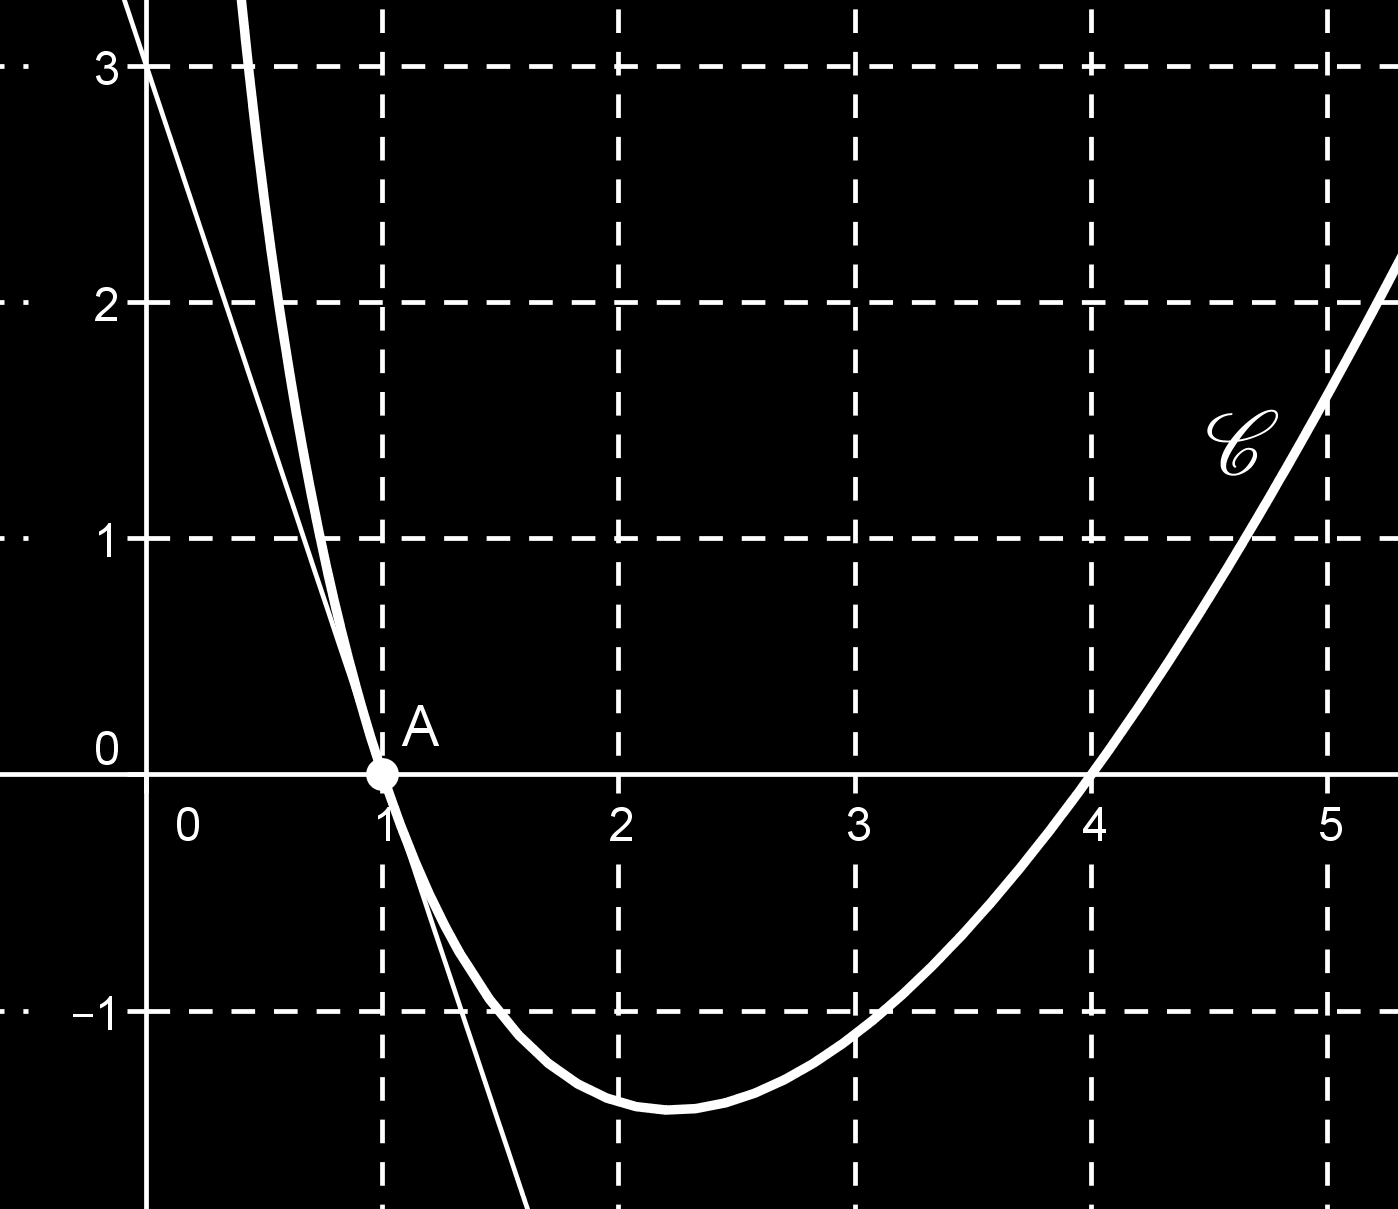 On a tracé la courbe C d une fonction f définie sur ]0; + [ et la tangente à C en A. On sait que f(x) = (ax + b) ln x où a et b sont des réels. On cherche les valeurs de a et b.